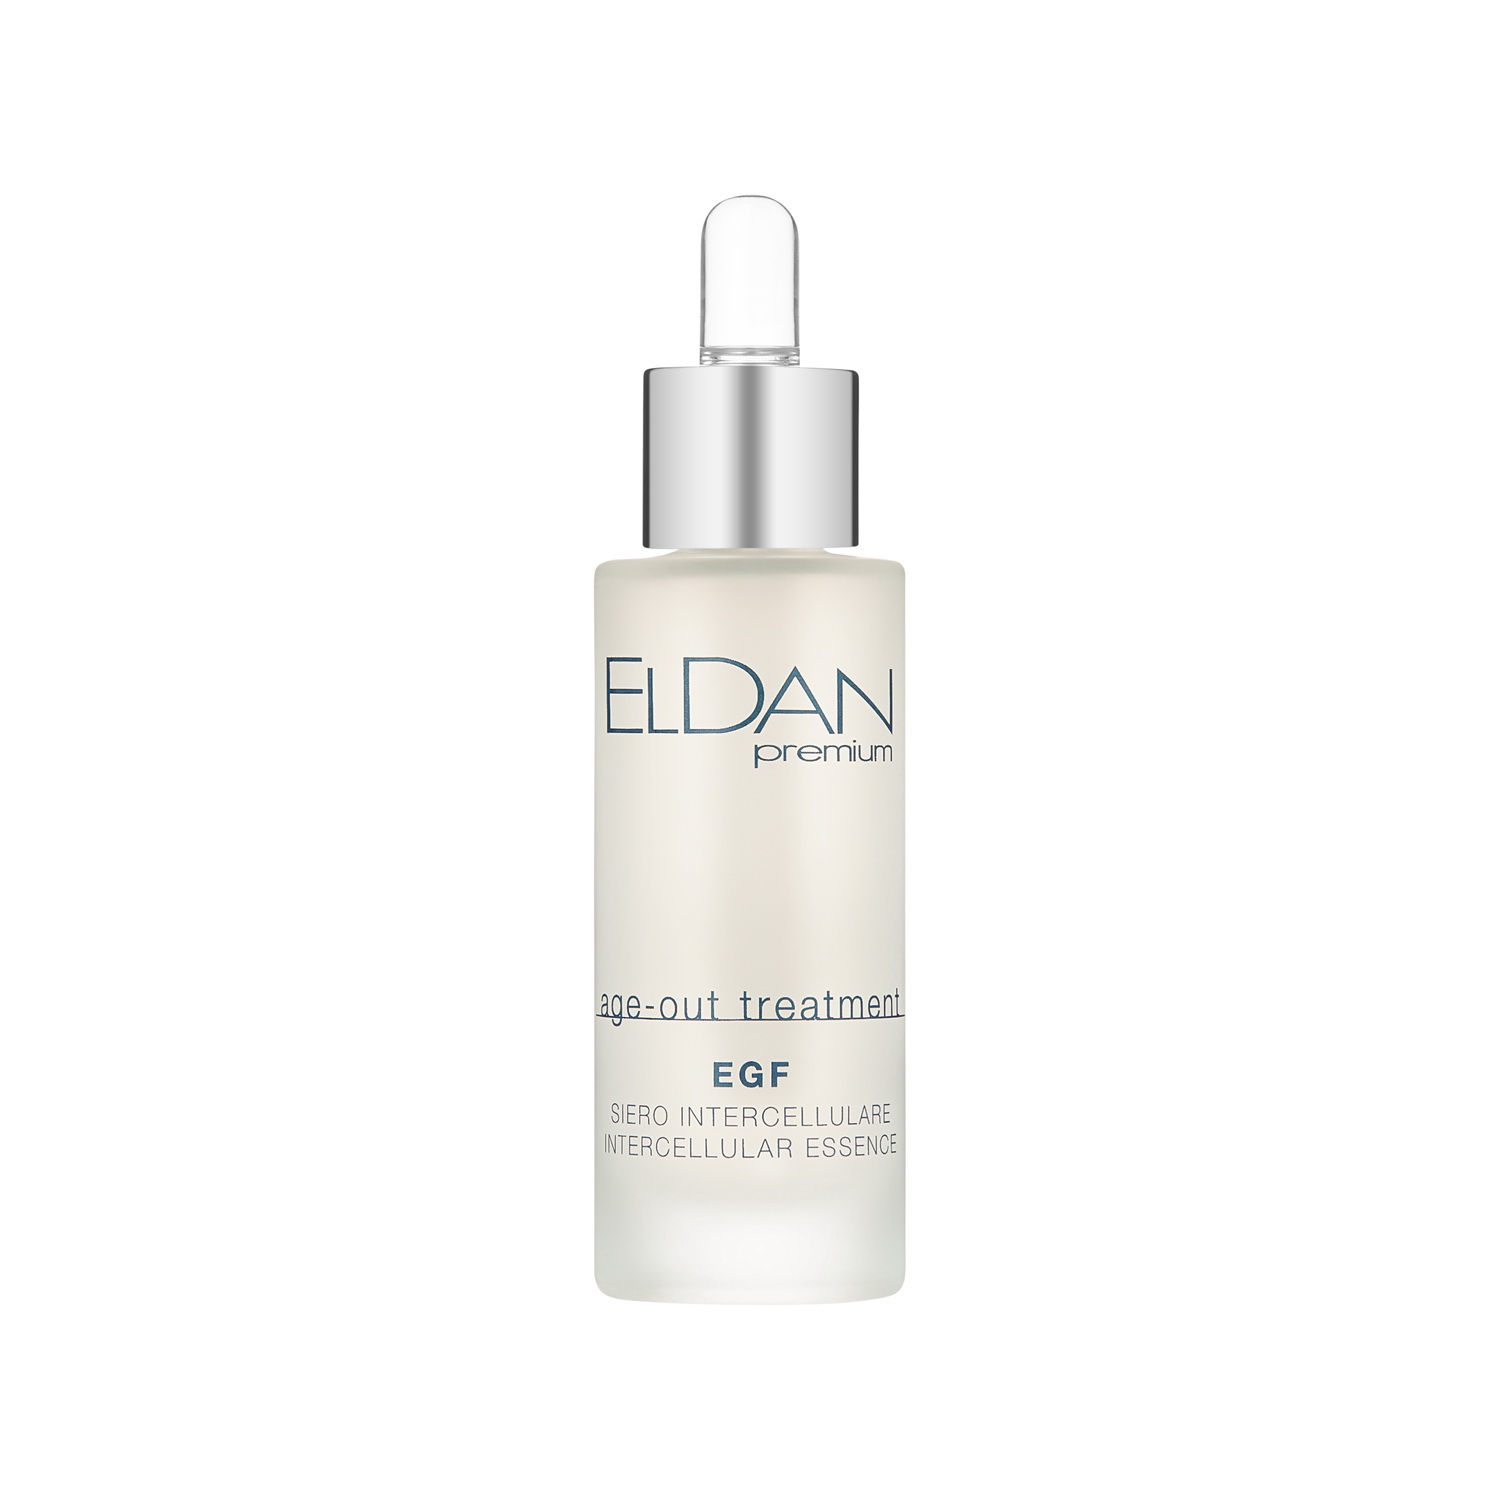 Сыворотка для лица Eldan Cosmetics EGF Intercellular Essence регенерирующая, 30 мл valmont лифтинг сыворотка для глаз essence of bees